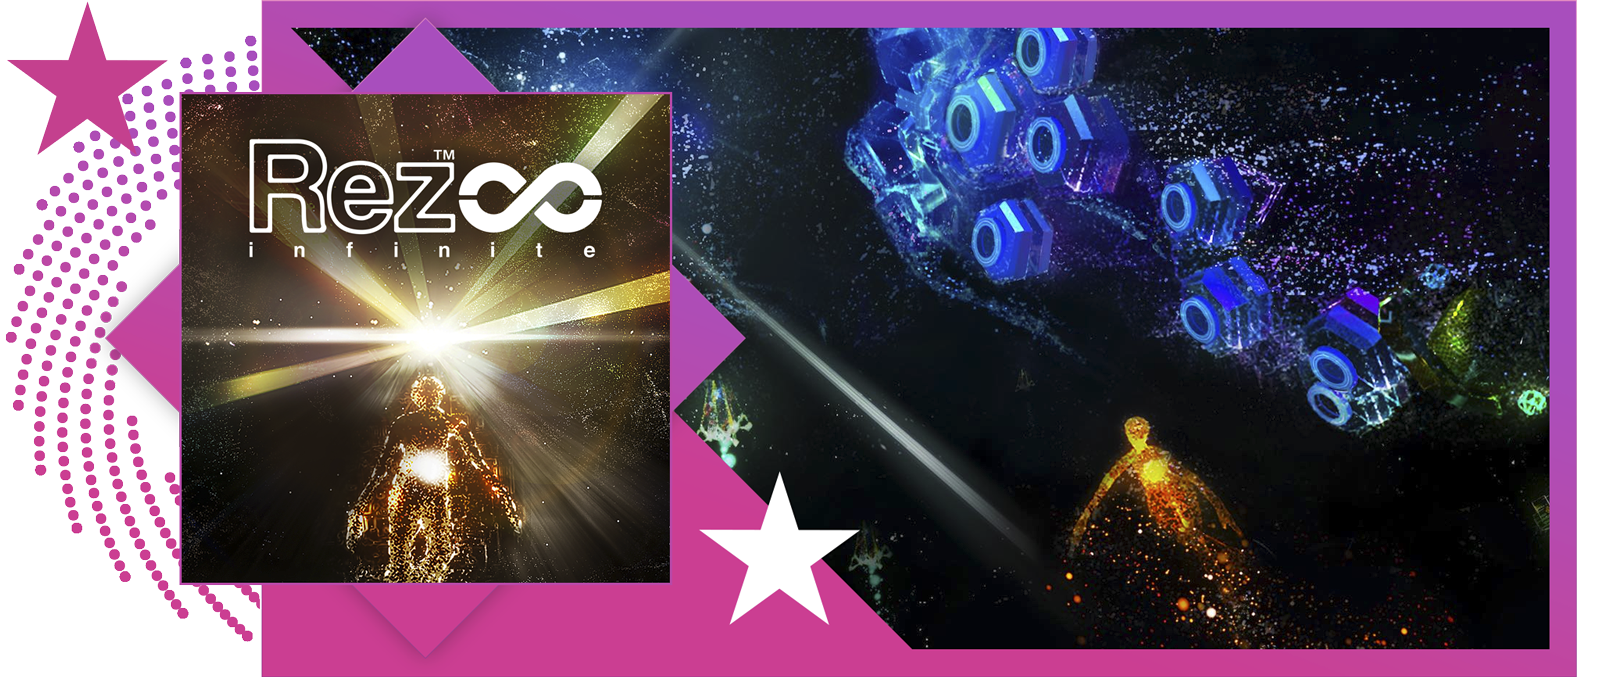 I migliori giochi musicali - Immagine in evidenza che include immagine principale e immagine del sistema di gioco di Rez Infinite.